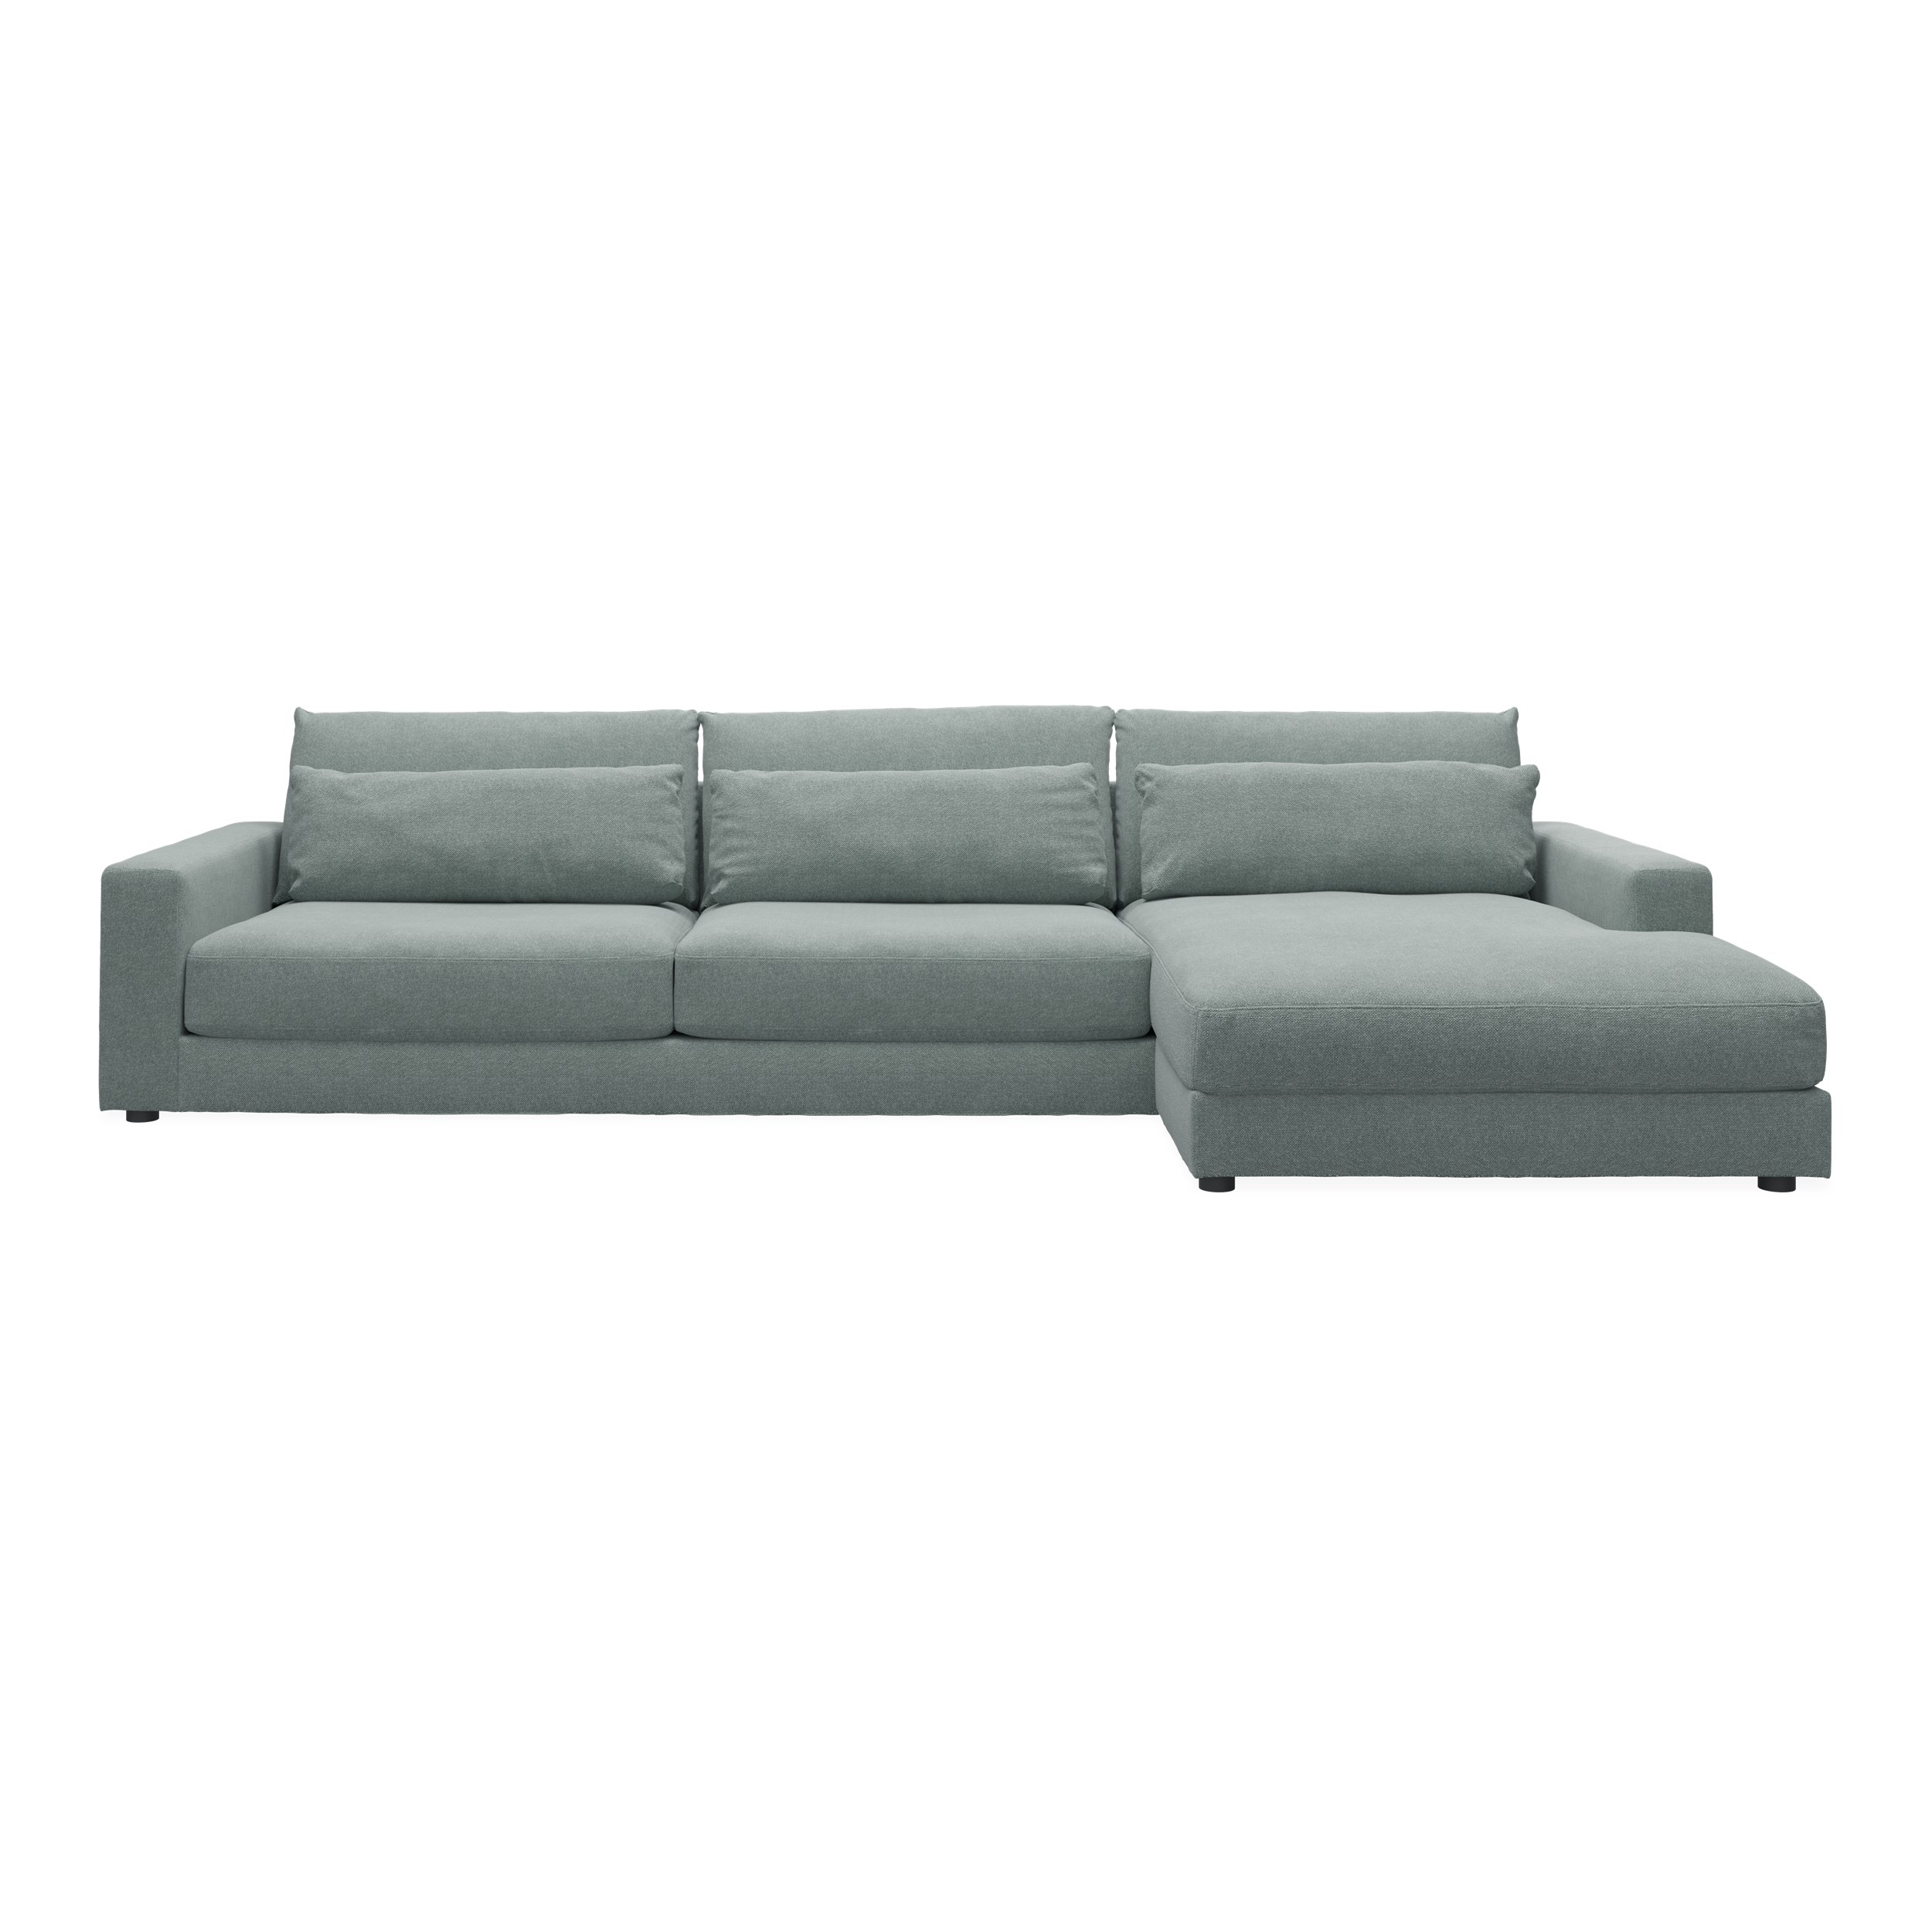 Halmstad högervänd soffa med schäslong - Rate 158 Niagara textil och ben i svart plast